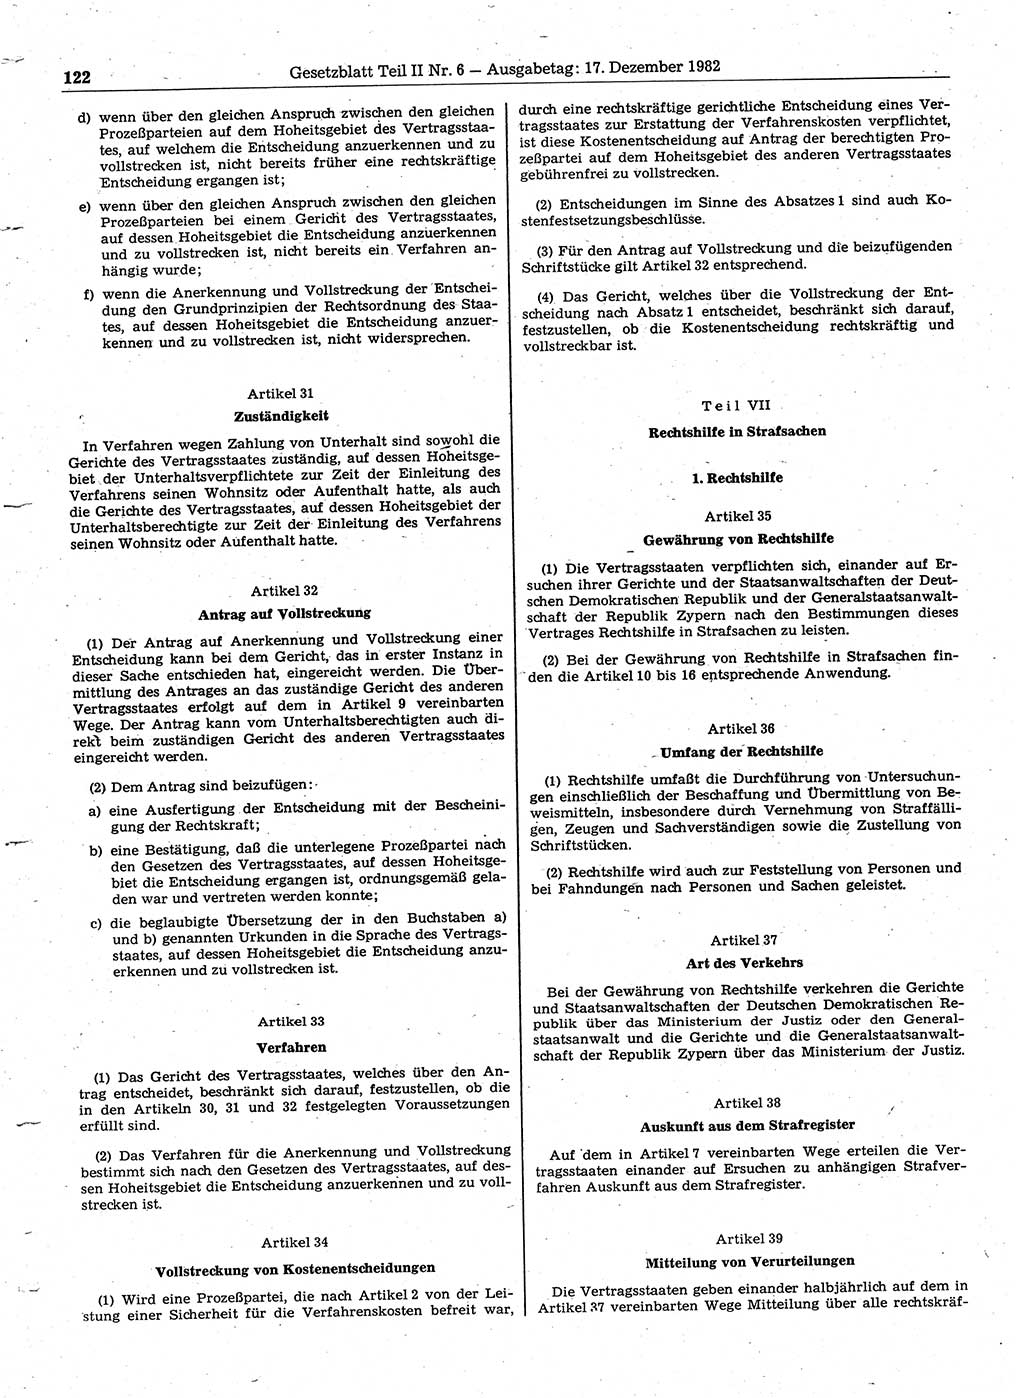 Gesetzblatt (GBl.) der Deutschen Demokratischen Republik (DDR) Teil ⅠⅠ 1982, Seite 122 (GBl. DDR ⅠⅠ 1982, S. 122)